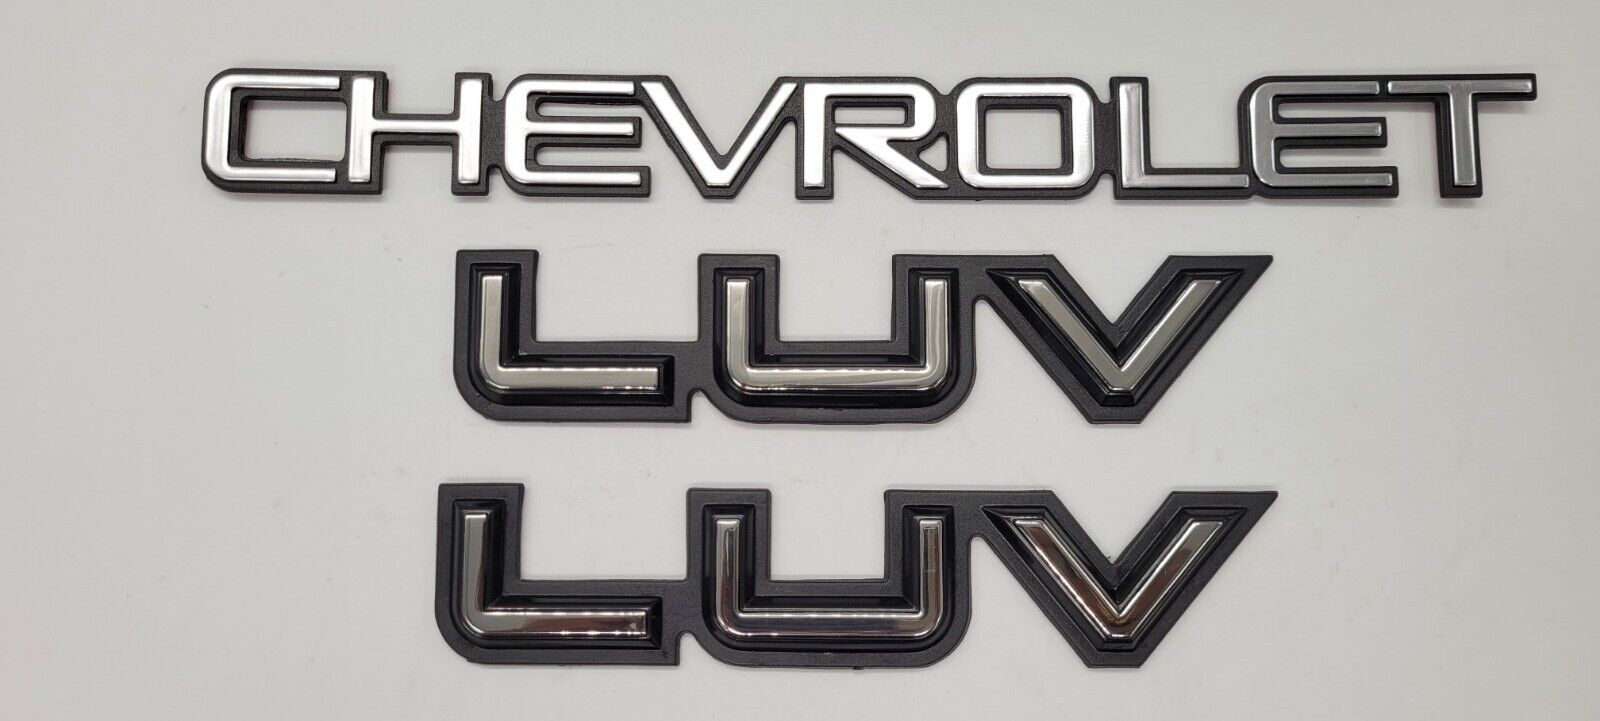 Chevrolet luv pick up side emblems 